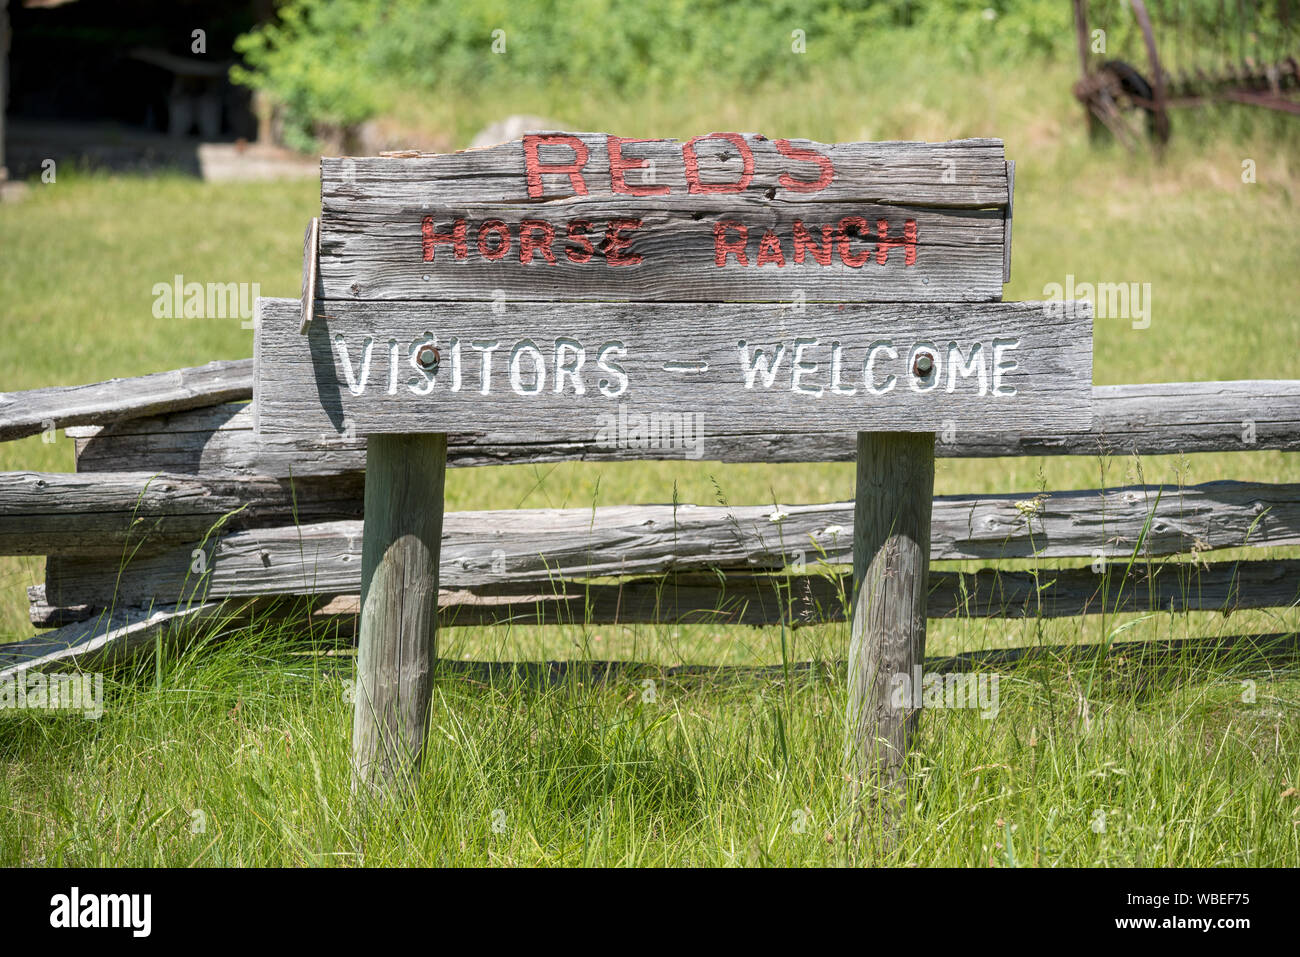 Unterschreiben Sie bei Reds Horse Ranch in Oregon Wallowa Mountains Willkommen. Stockfoto